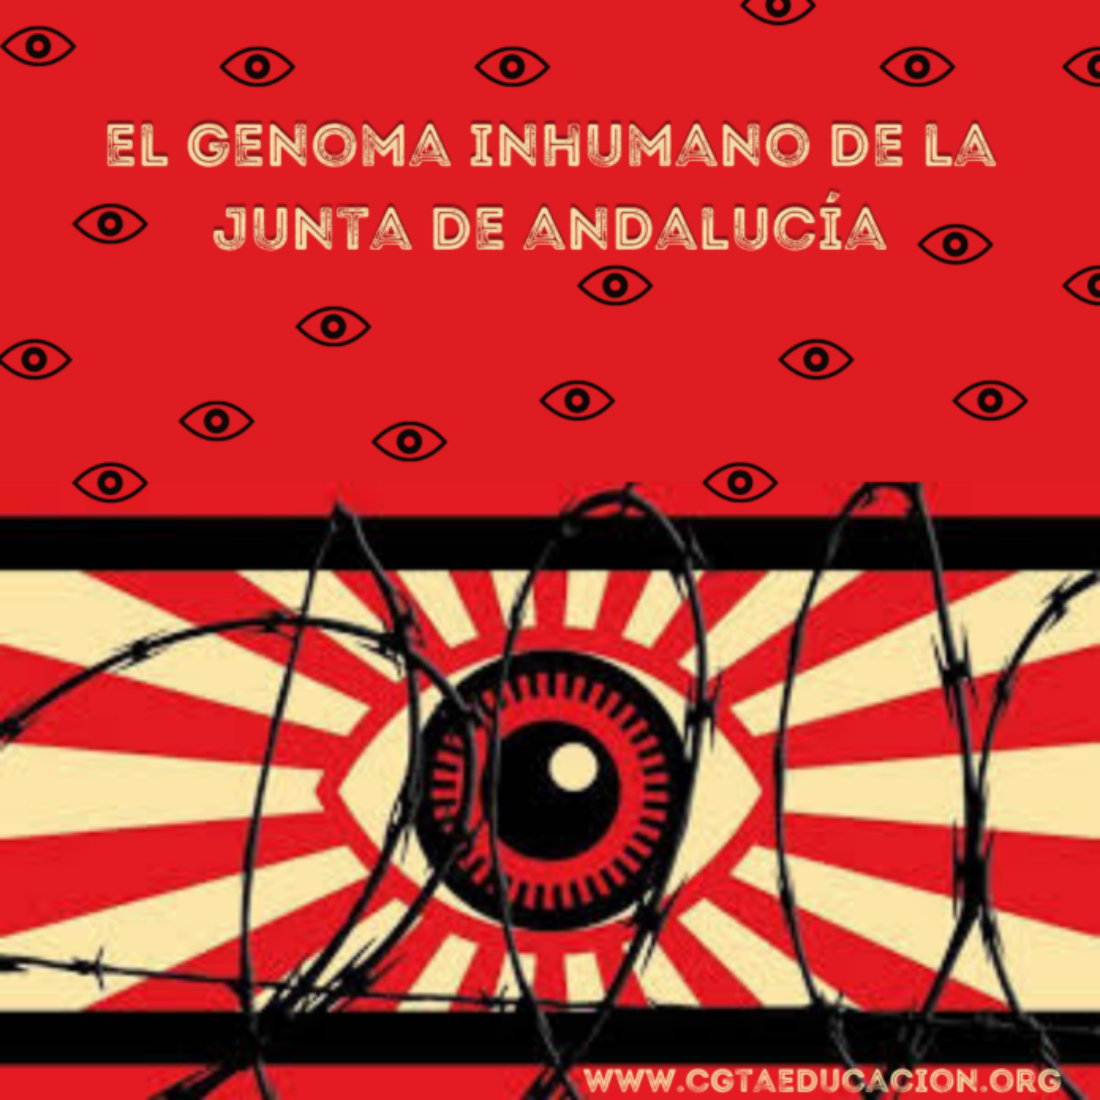 El genoma inhumano de la Junta de Andalucía